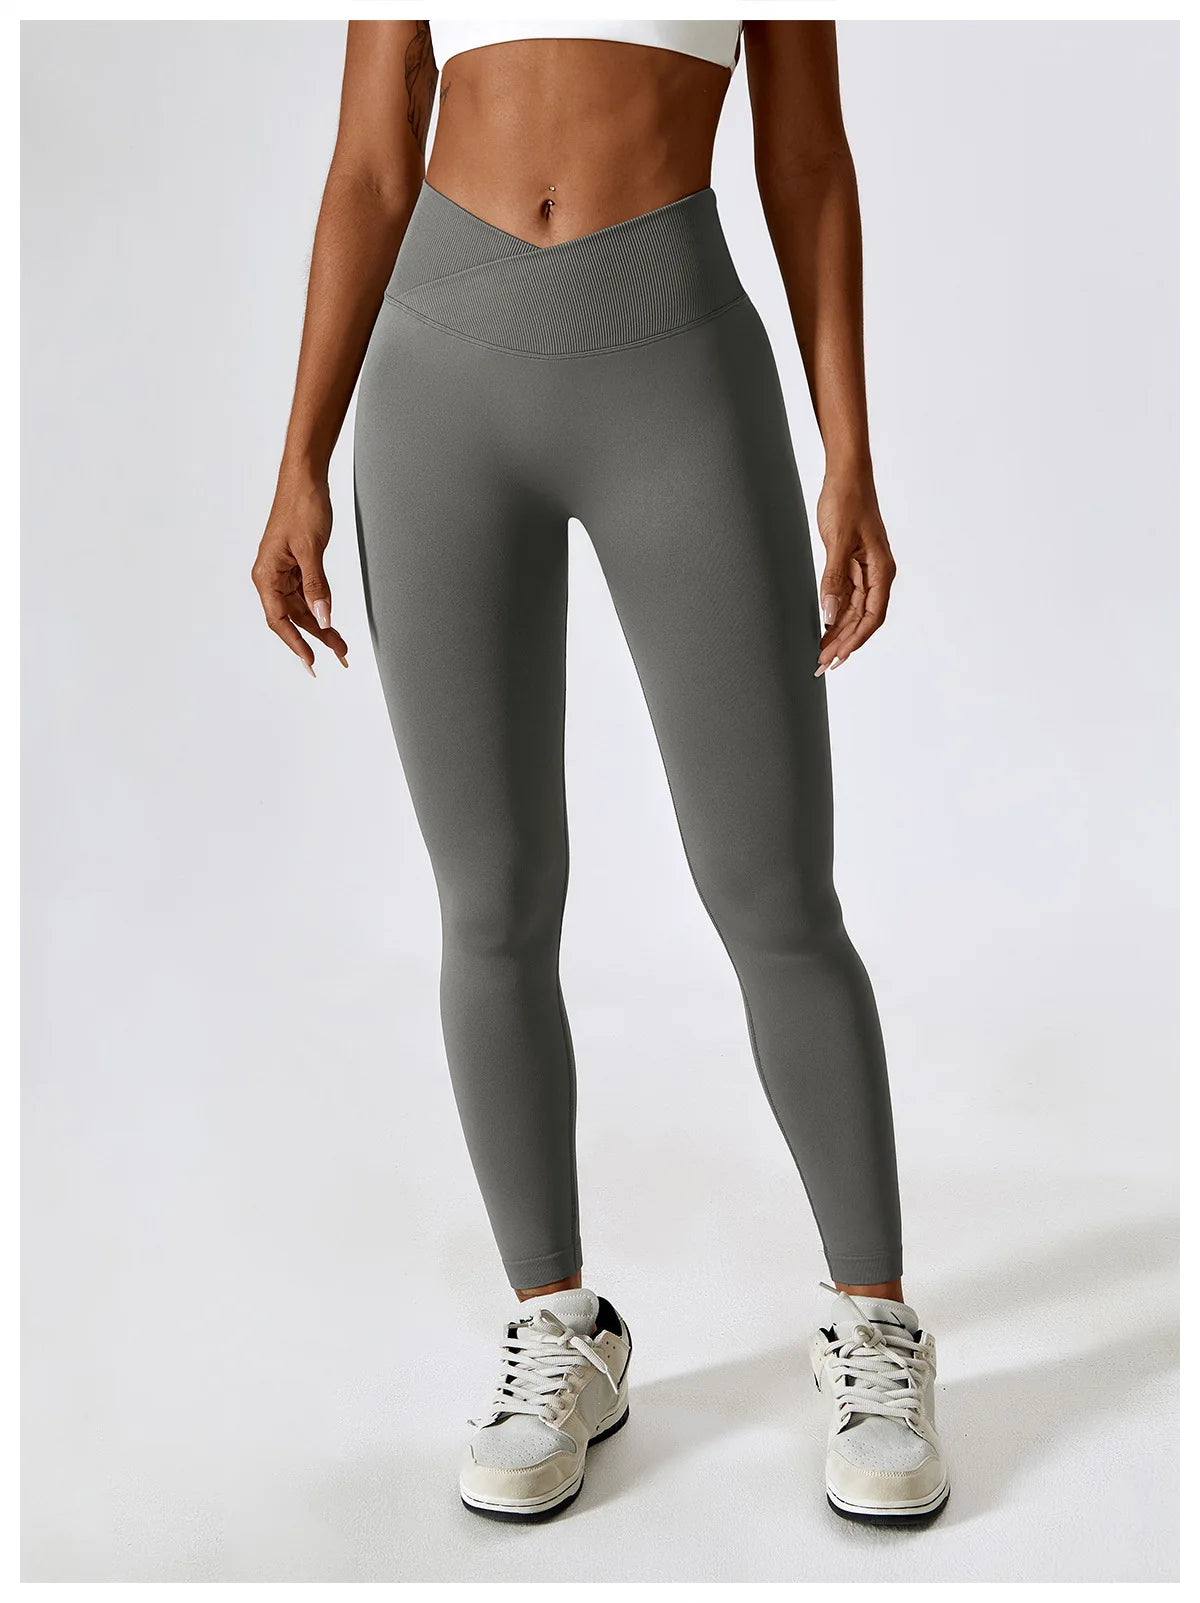 grey yoga leggings